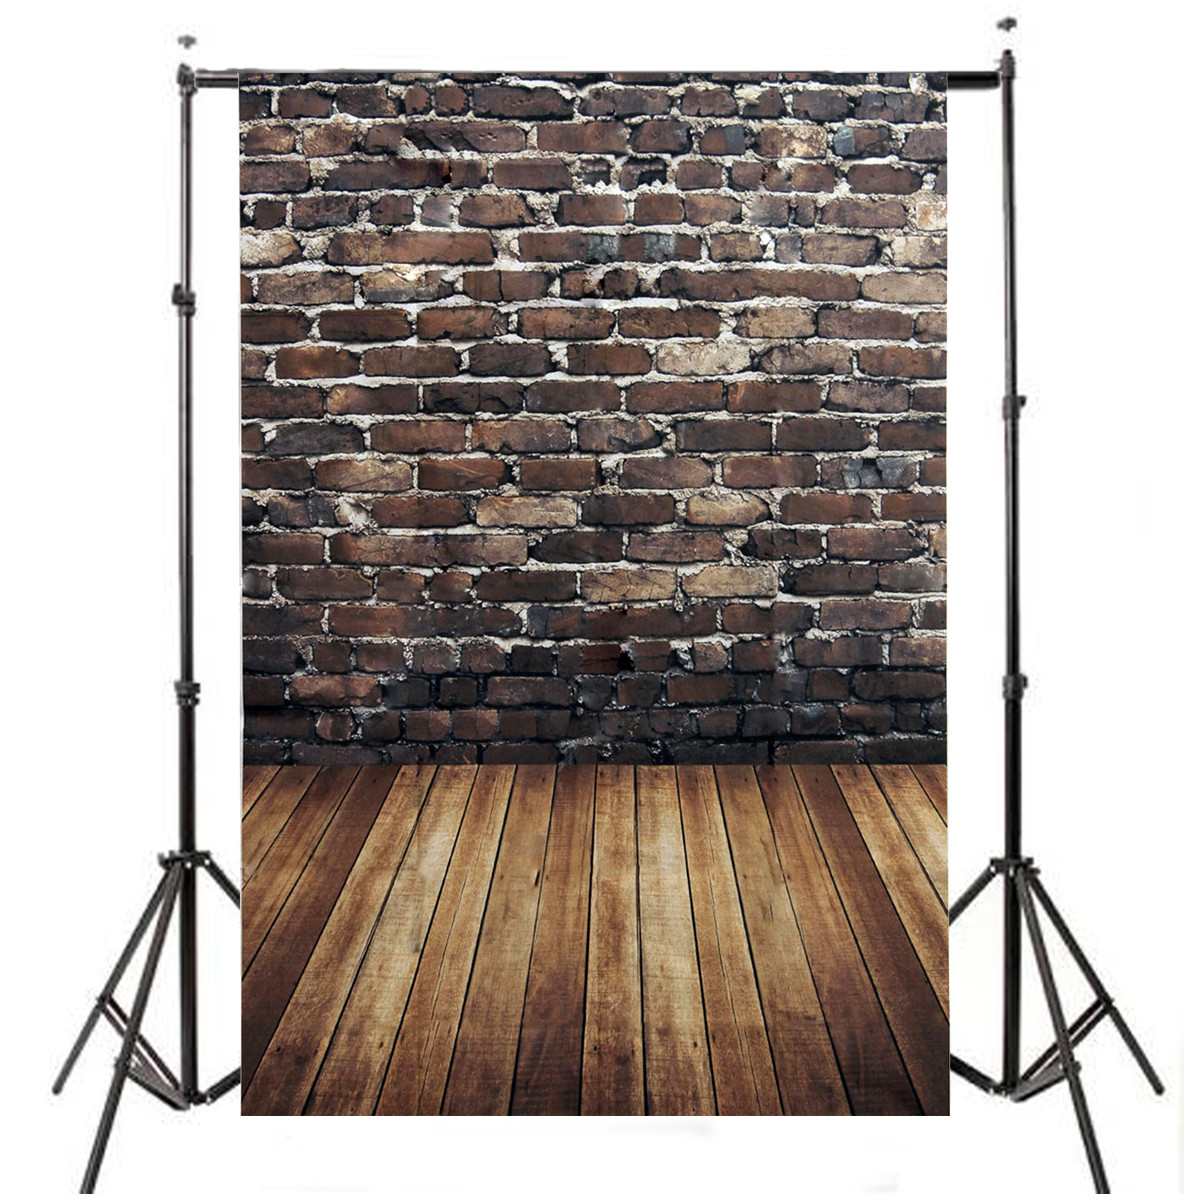 

5x7FT винил коричневый кирпичная стена деревянный пол фотография фон фон студия опора